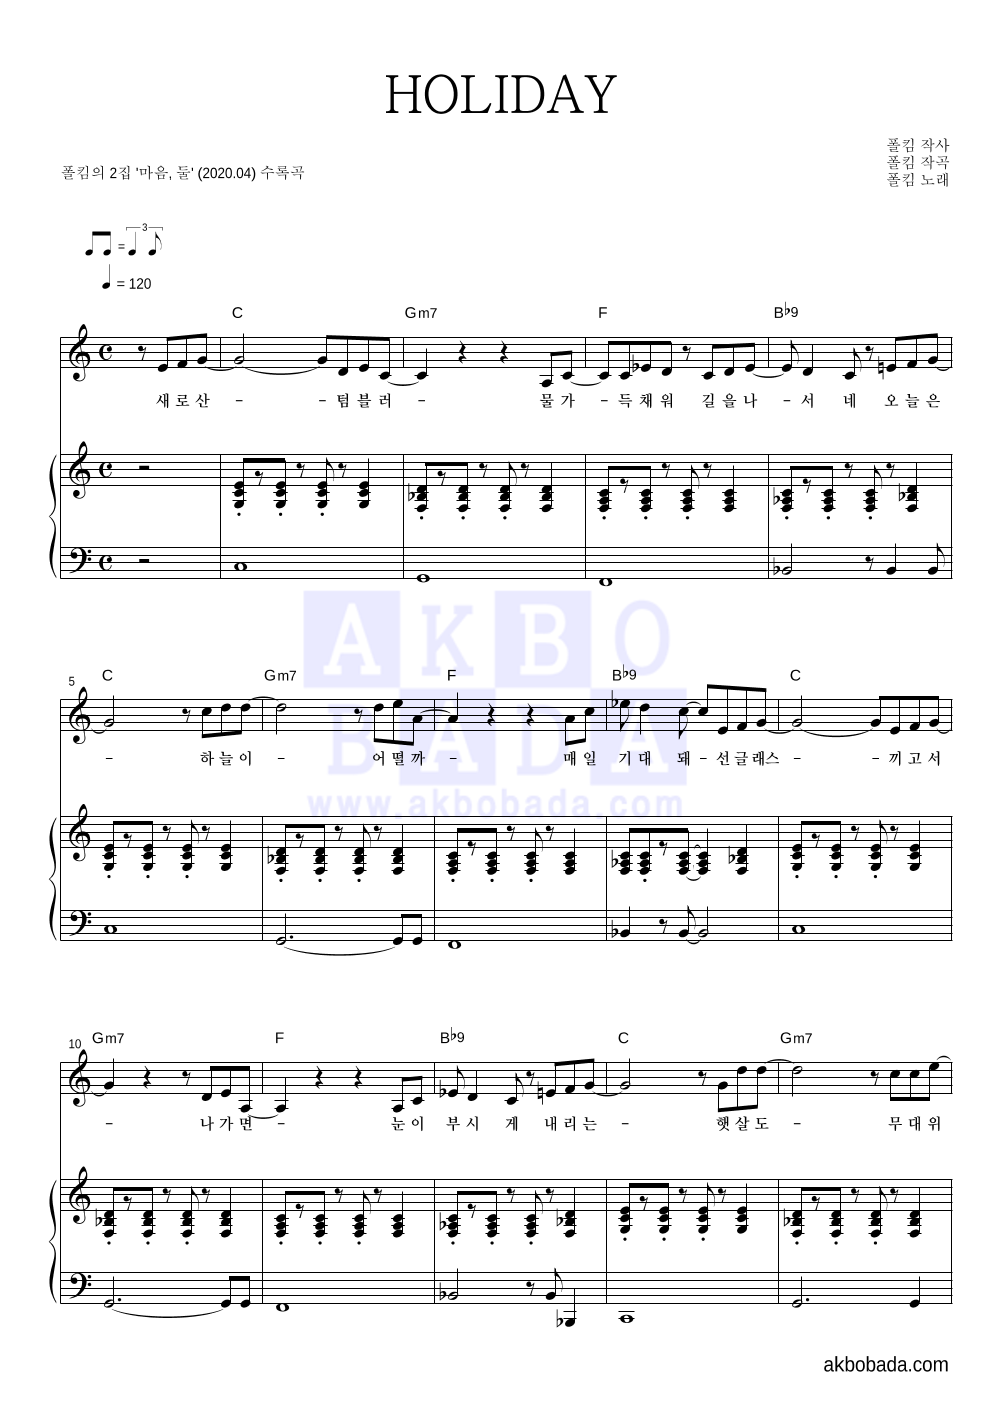 폴킴 - HOLIDAY 피아노 3단 악보 